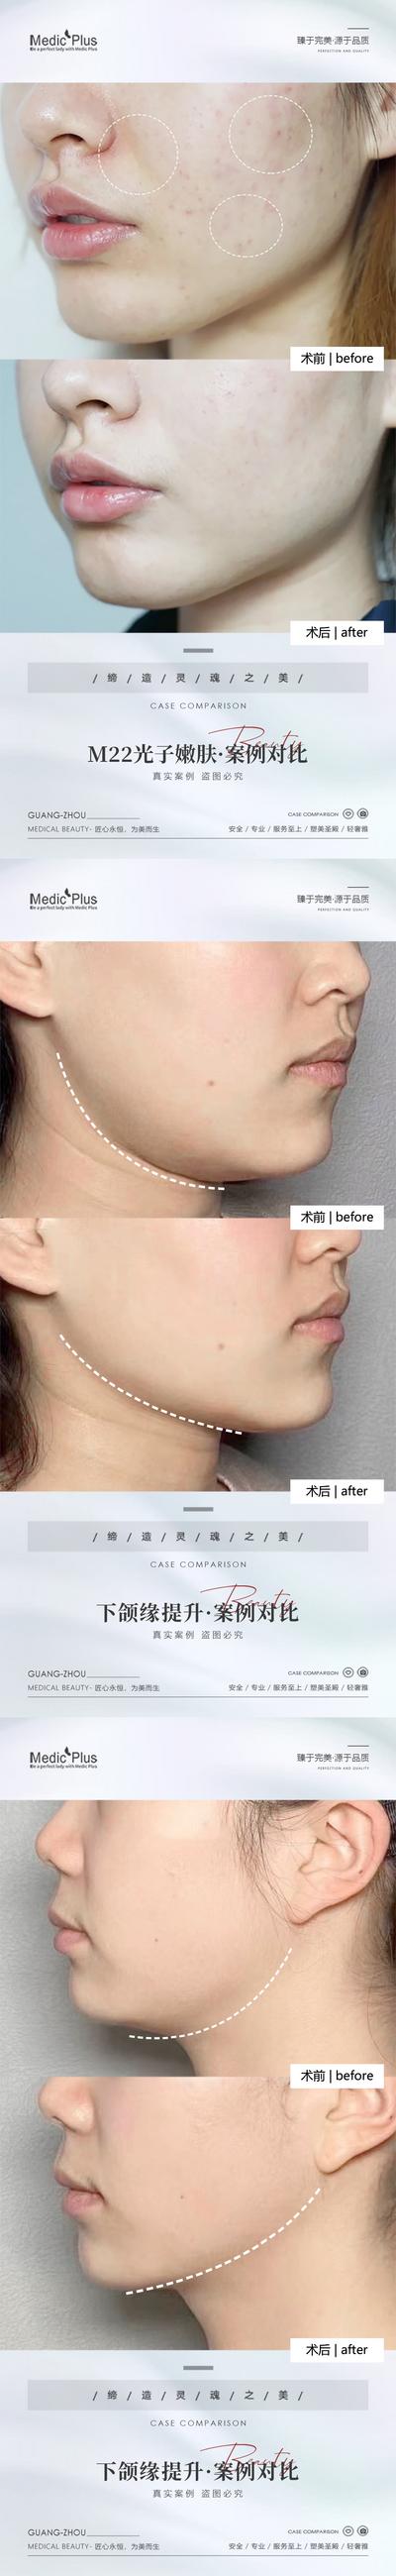 南门网 海报 医美 整形 美容 光子嫩肤 下颌缘提升 抗衰 案例 对比